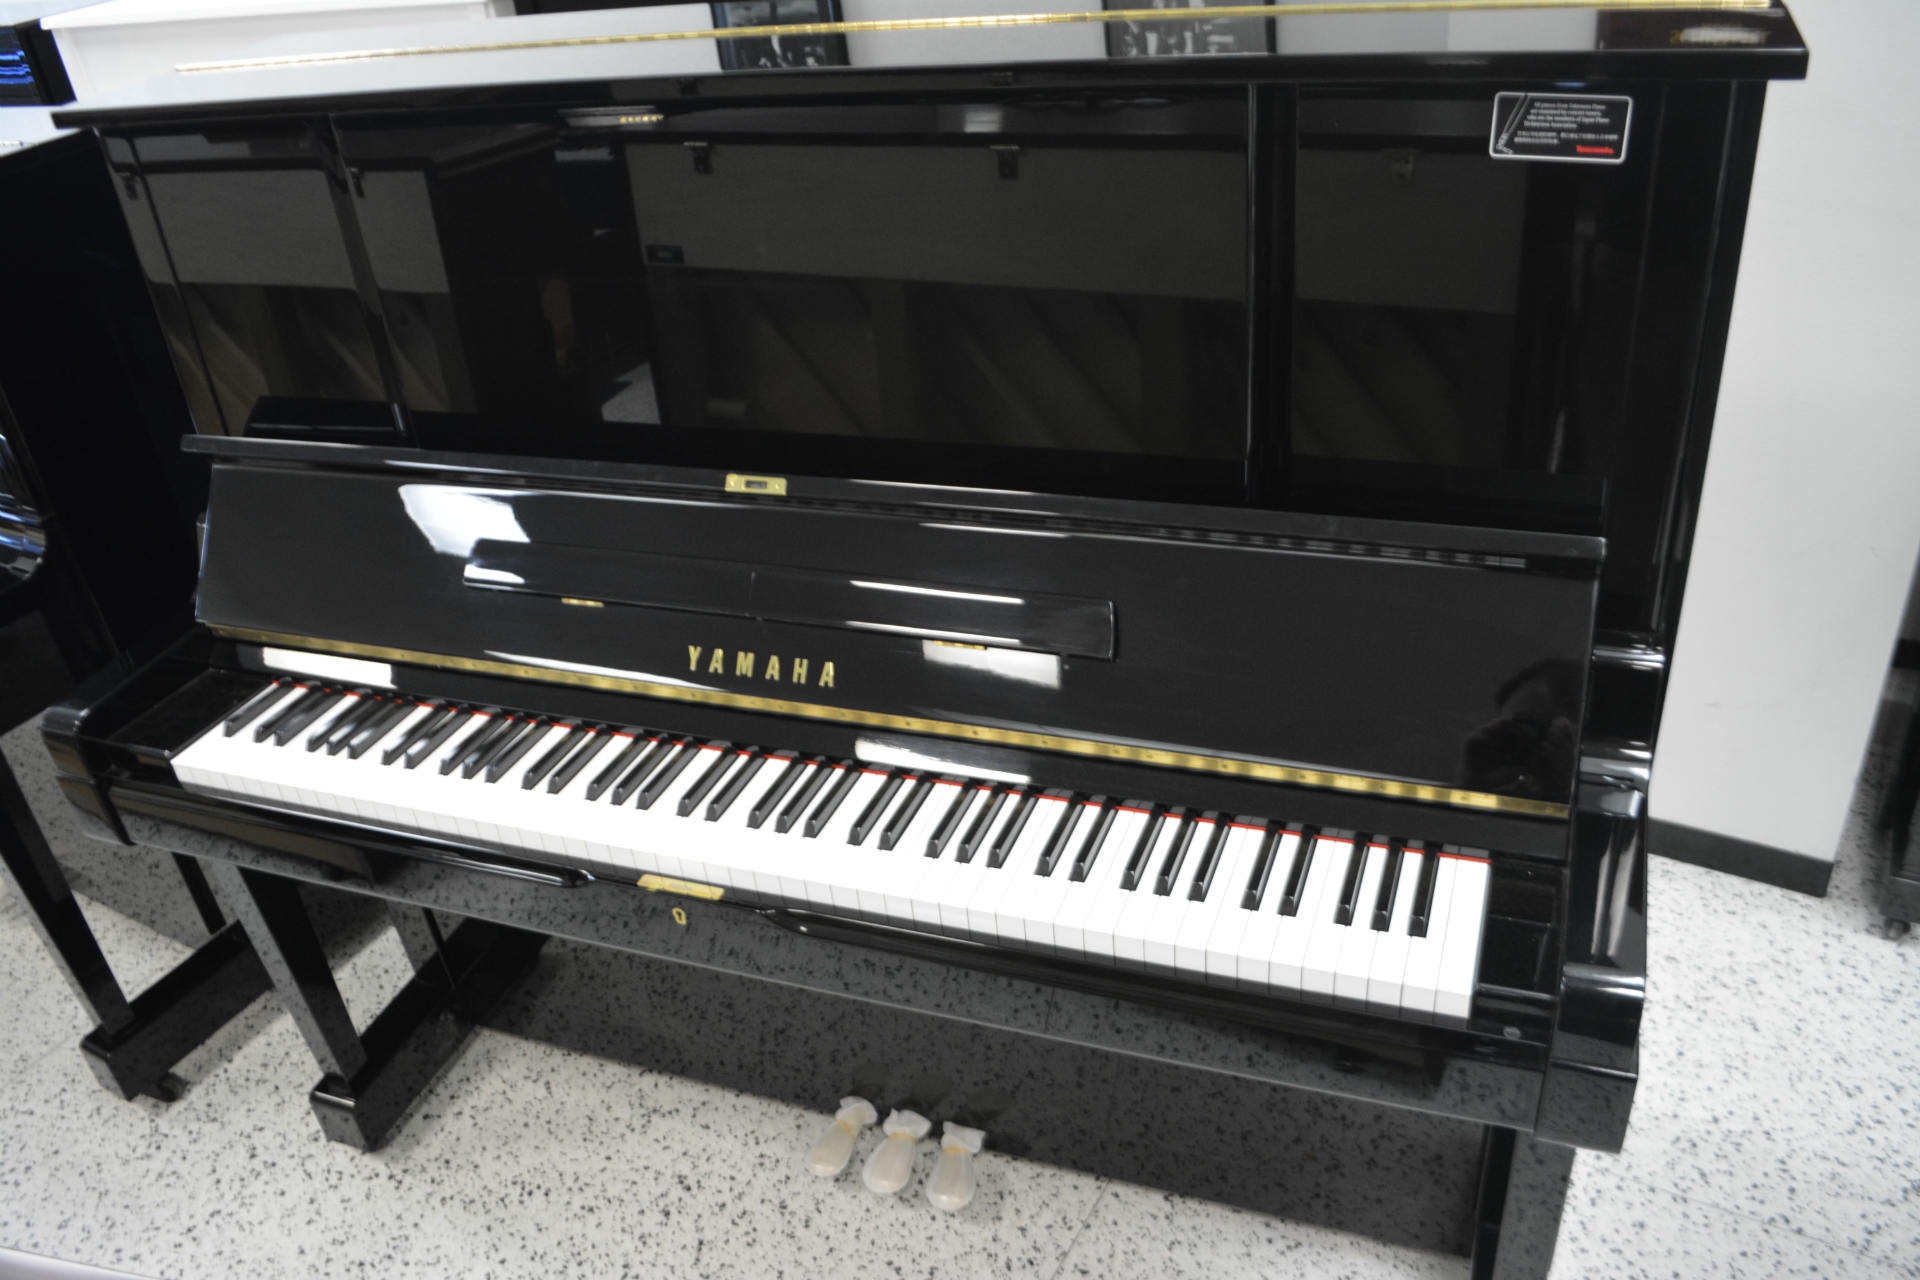 1976 yamaha ux ebony piano